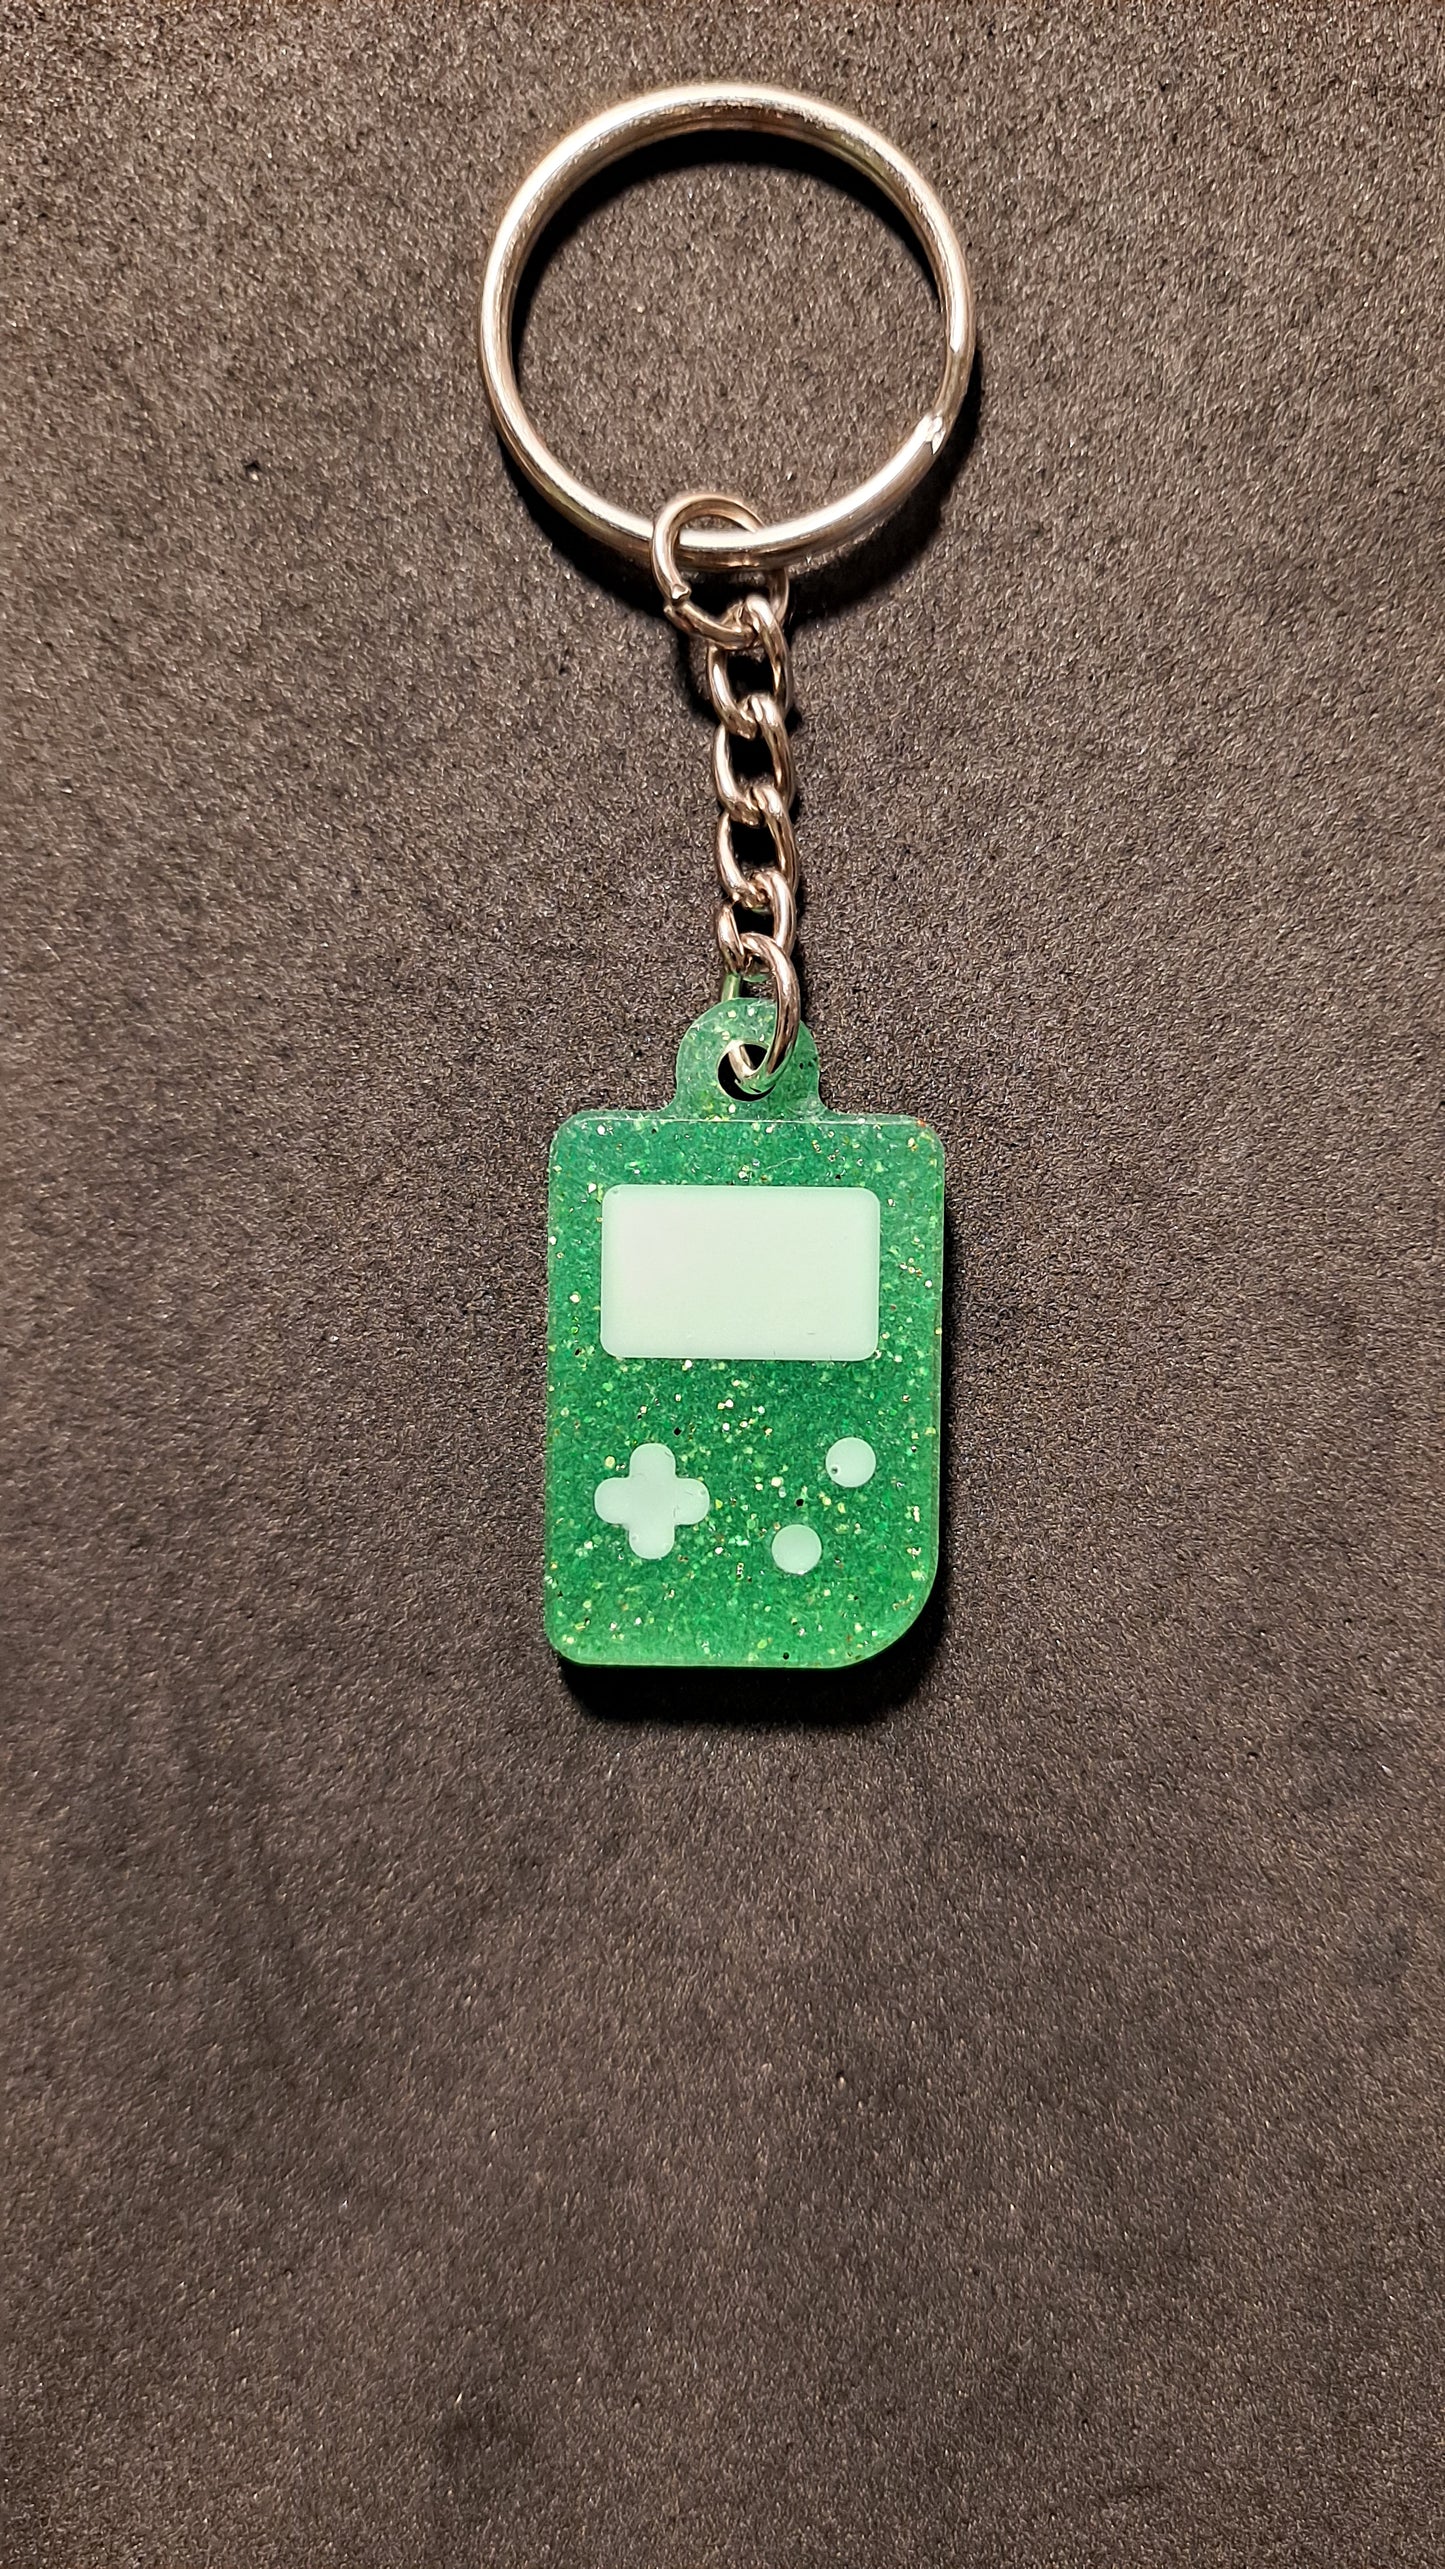 Retro Gameboy Shaped Keychain